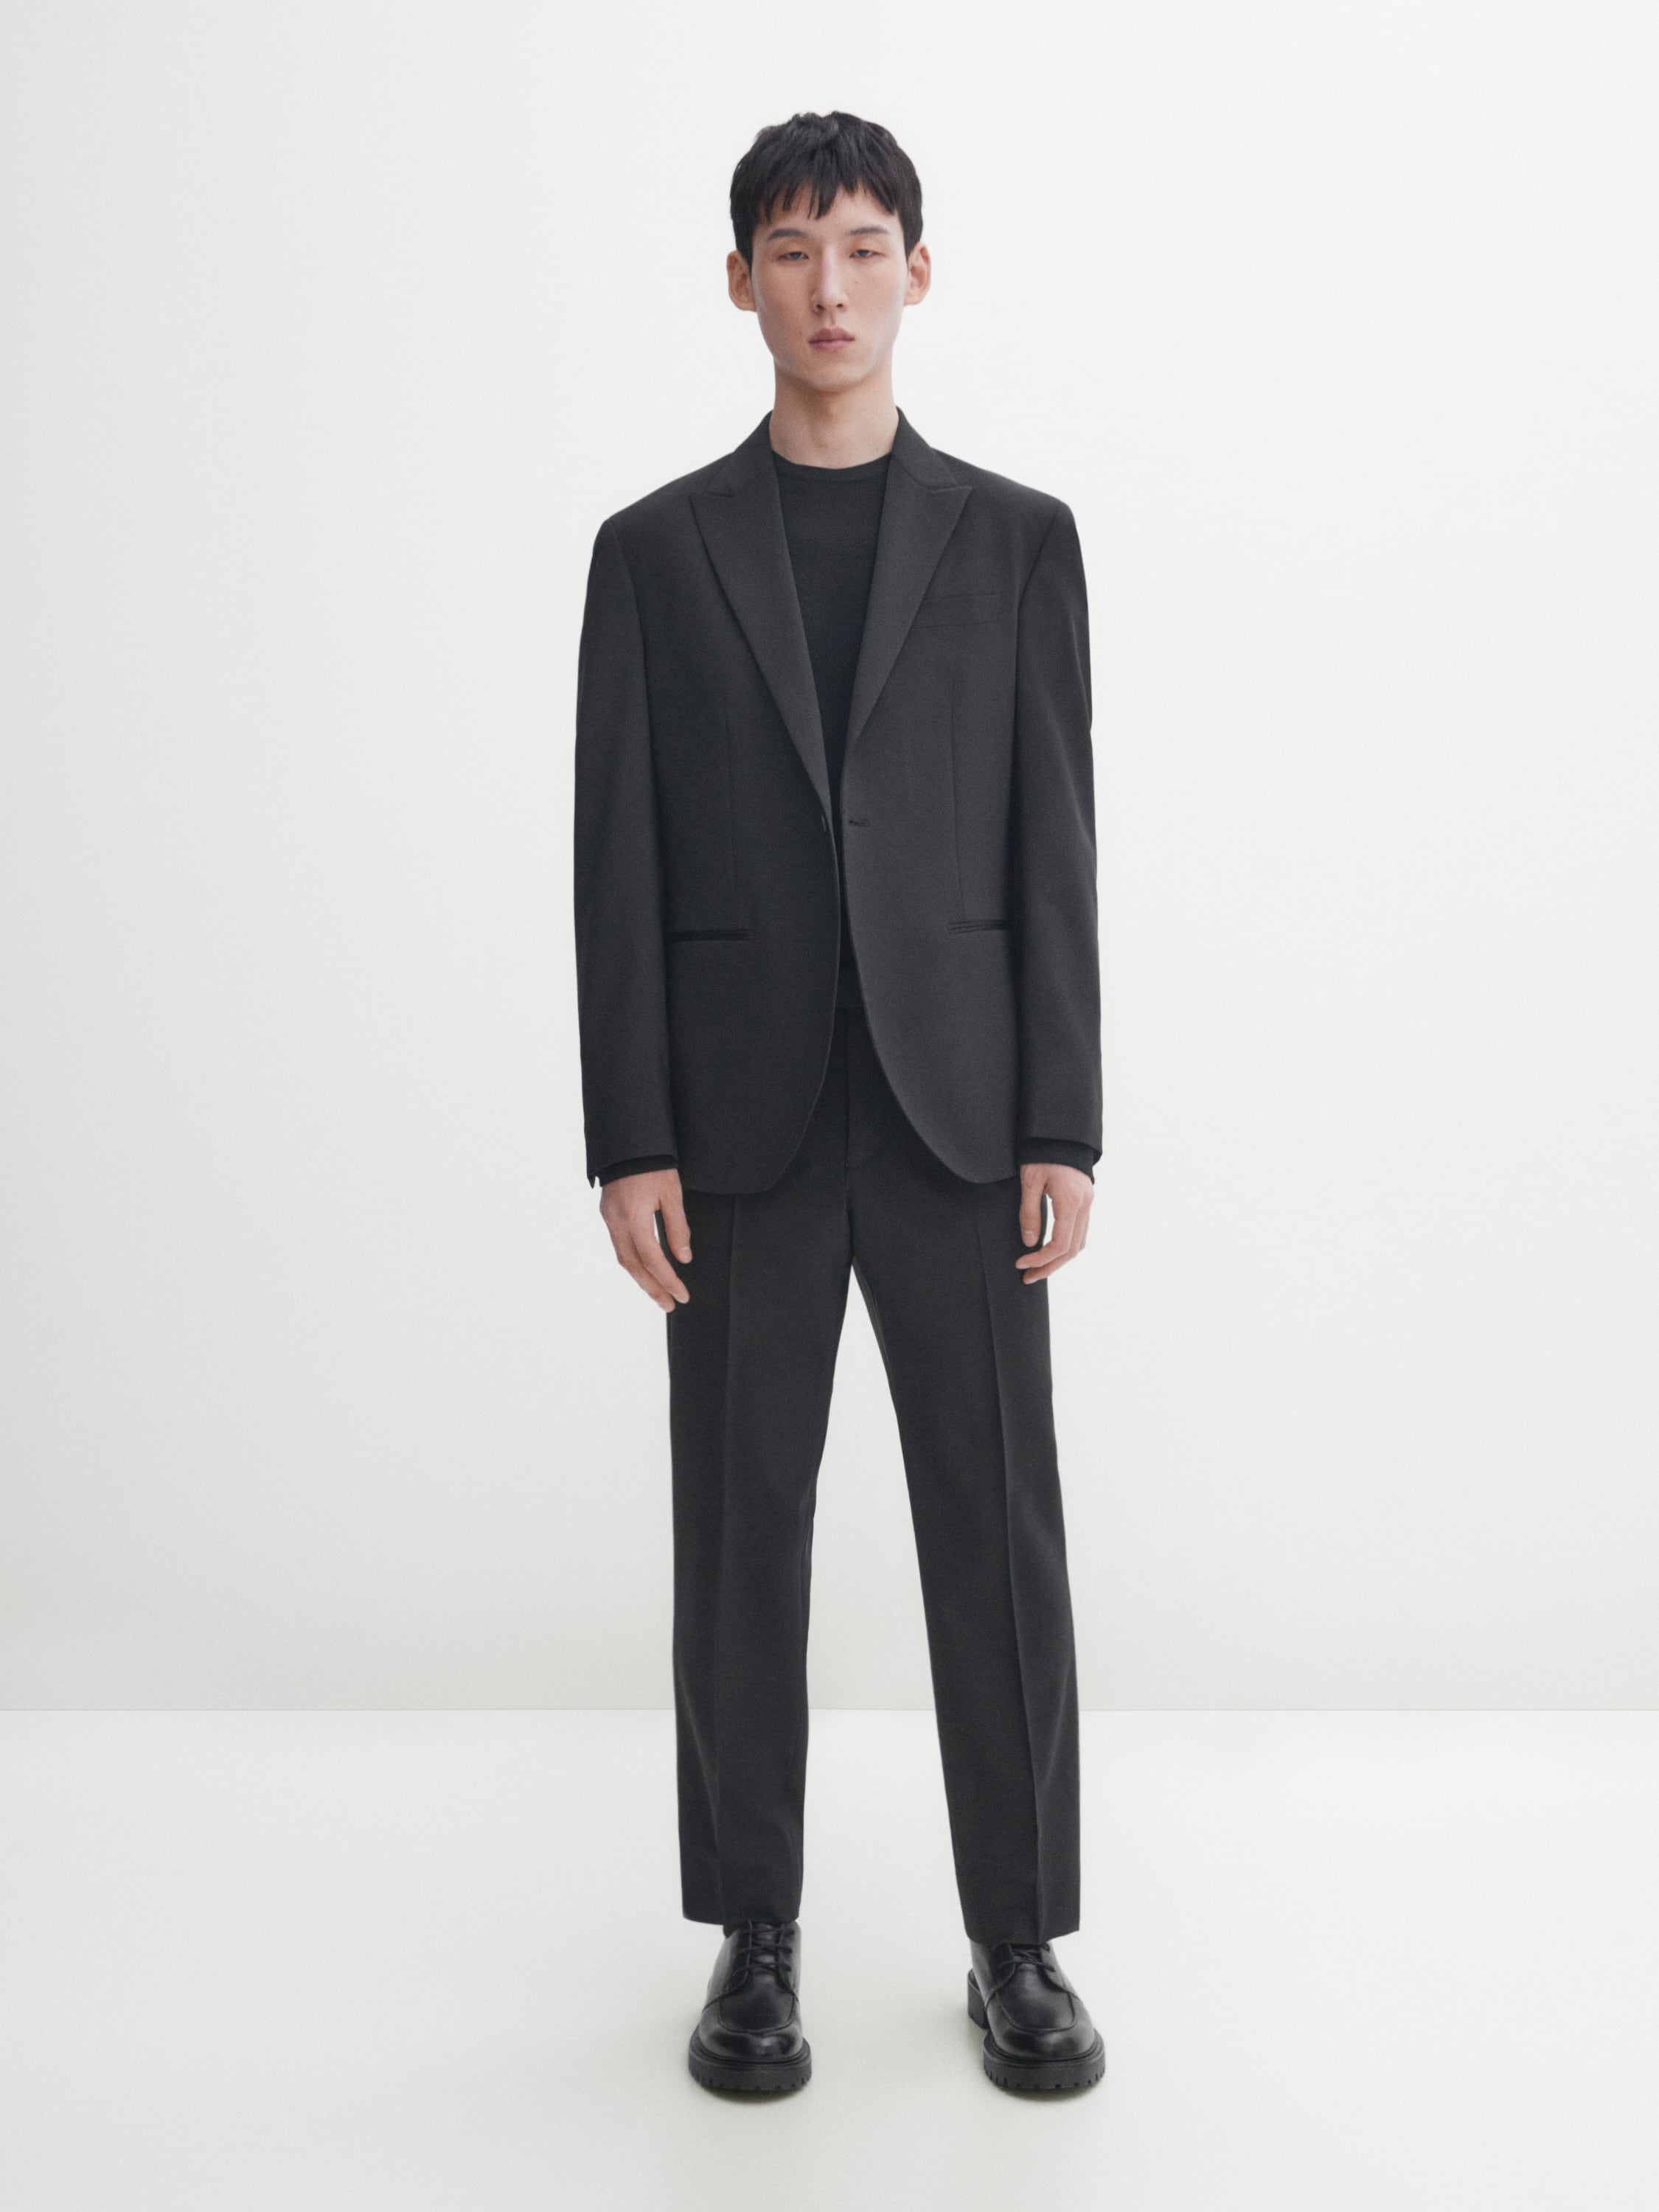 Black tuxedo suit trousers